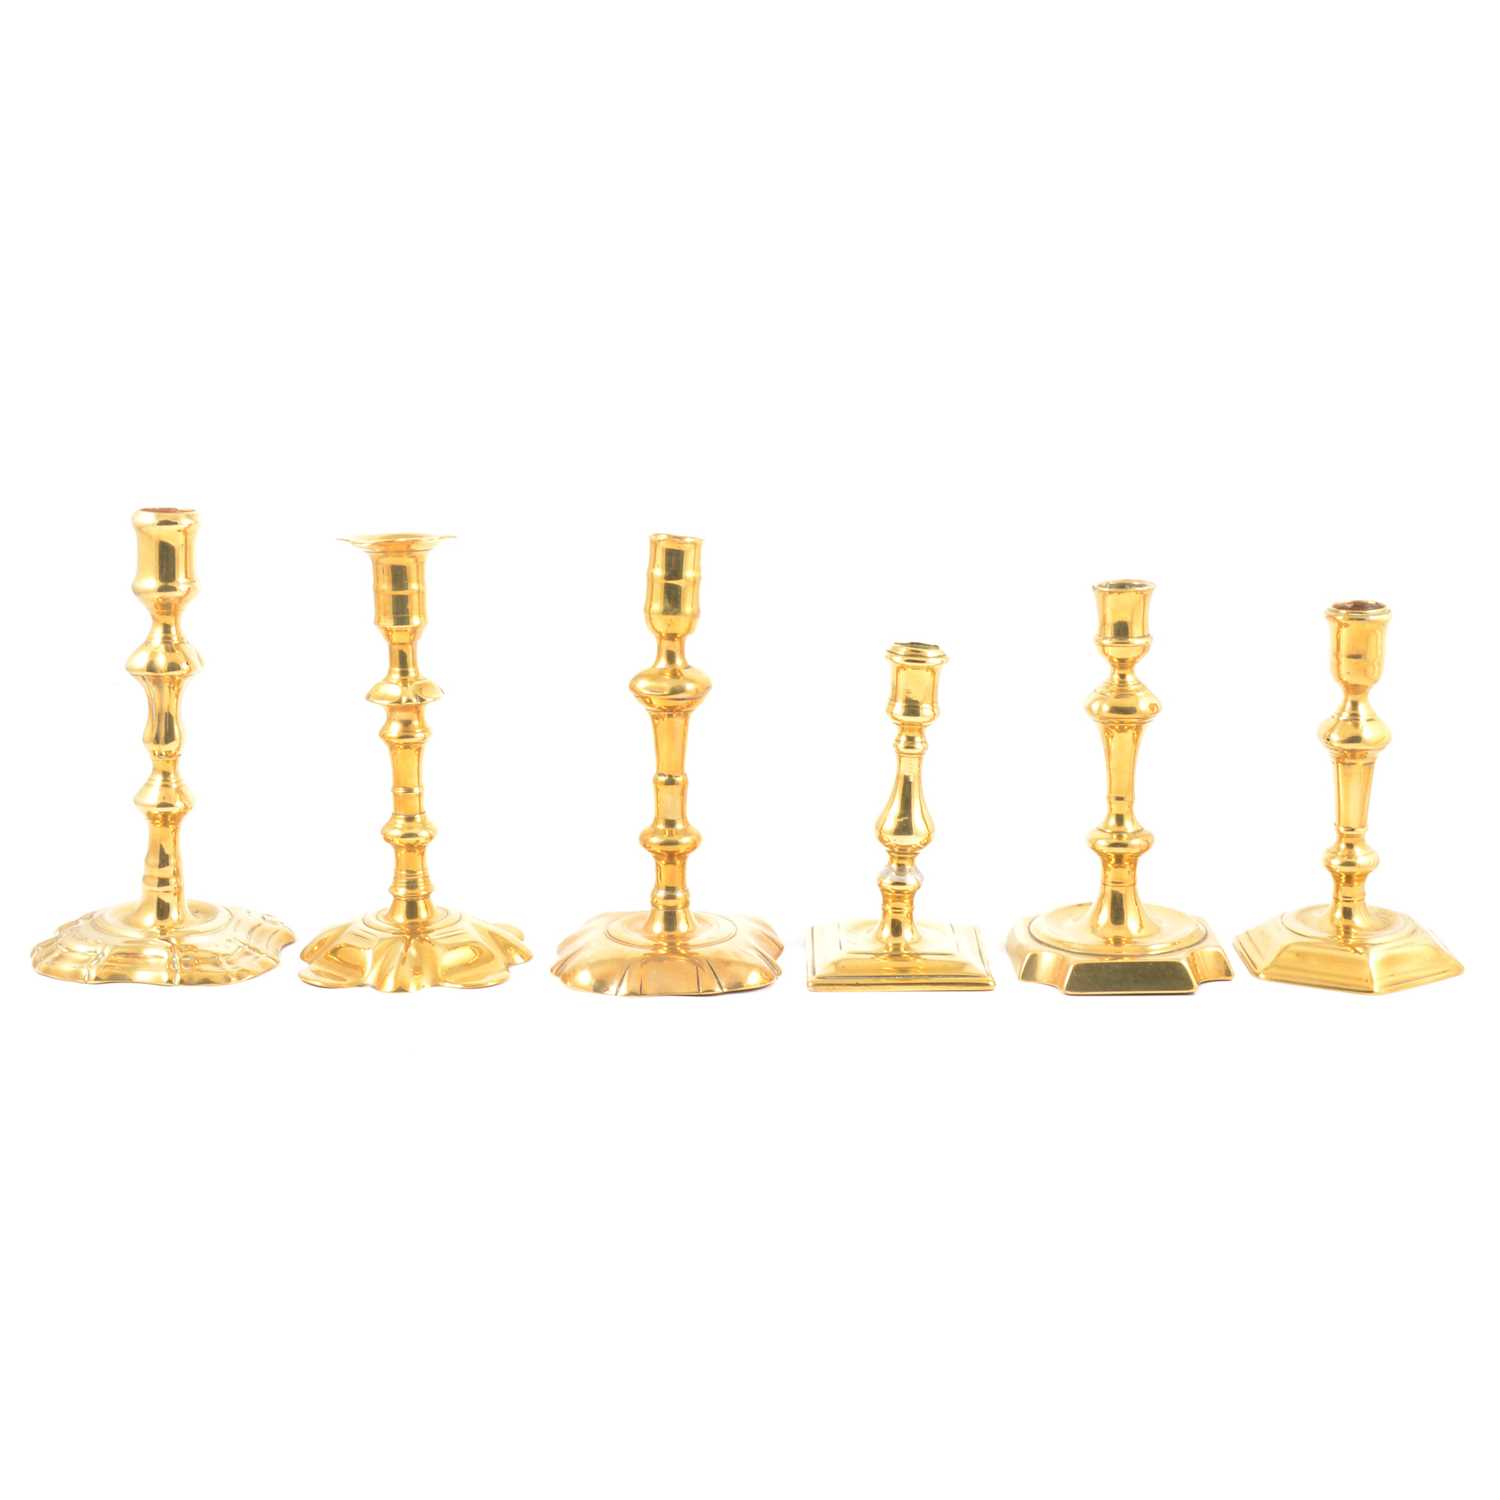 Six brass candlesticks